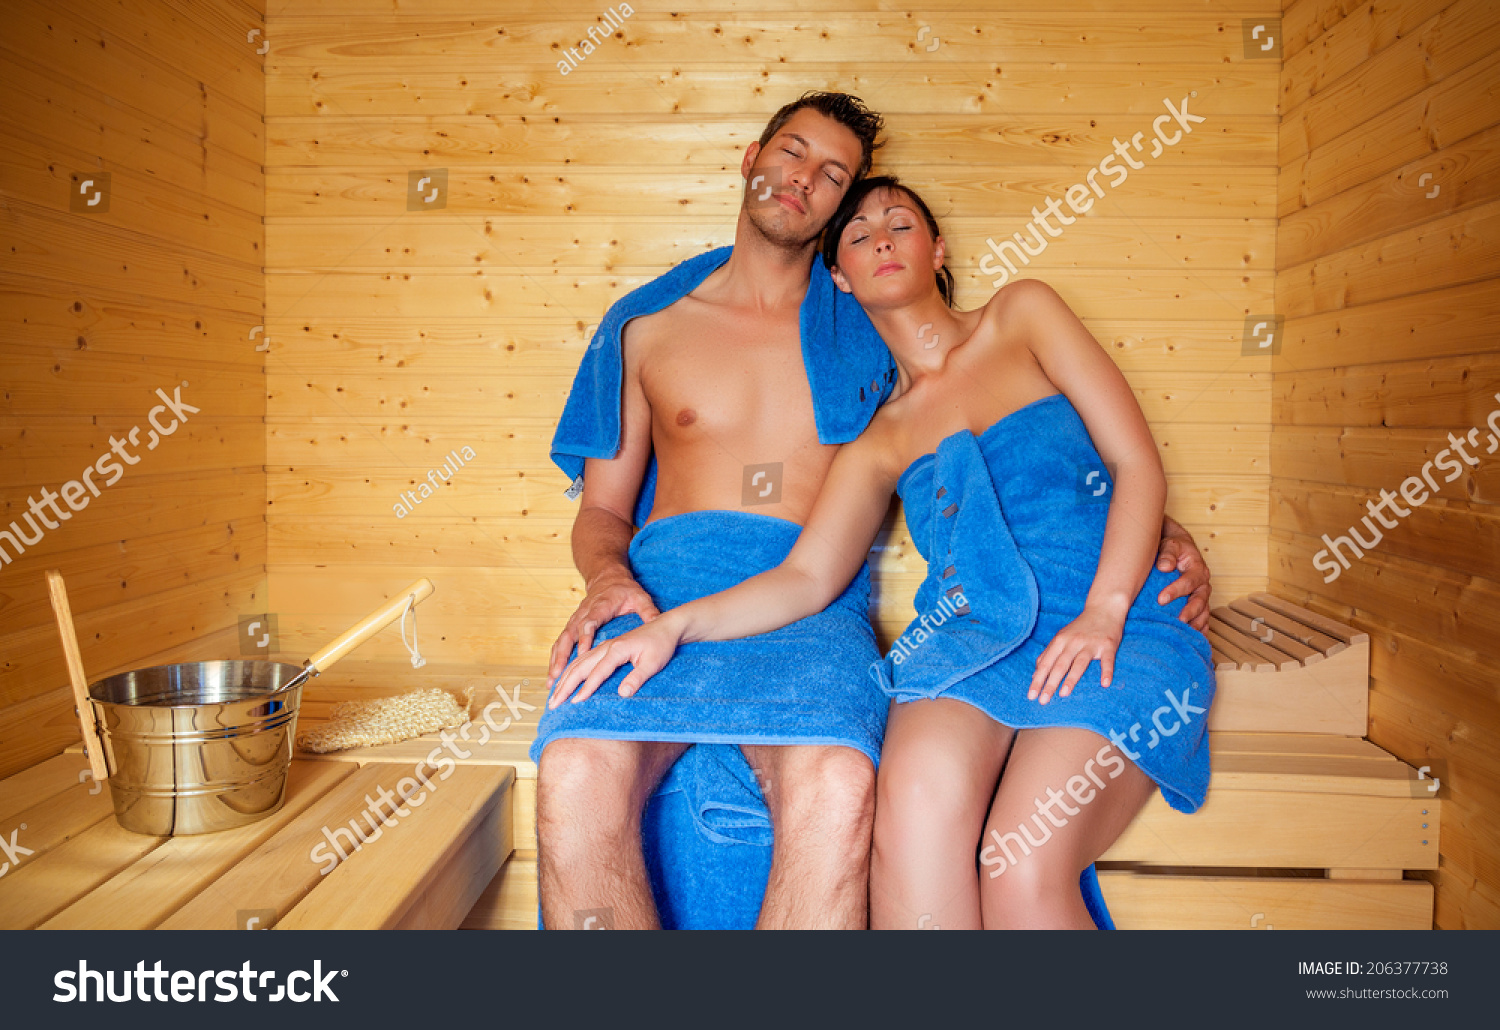 Супружеская пара в бане